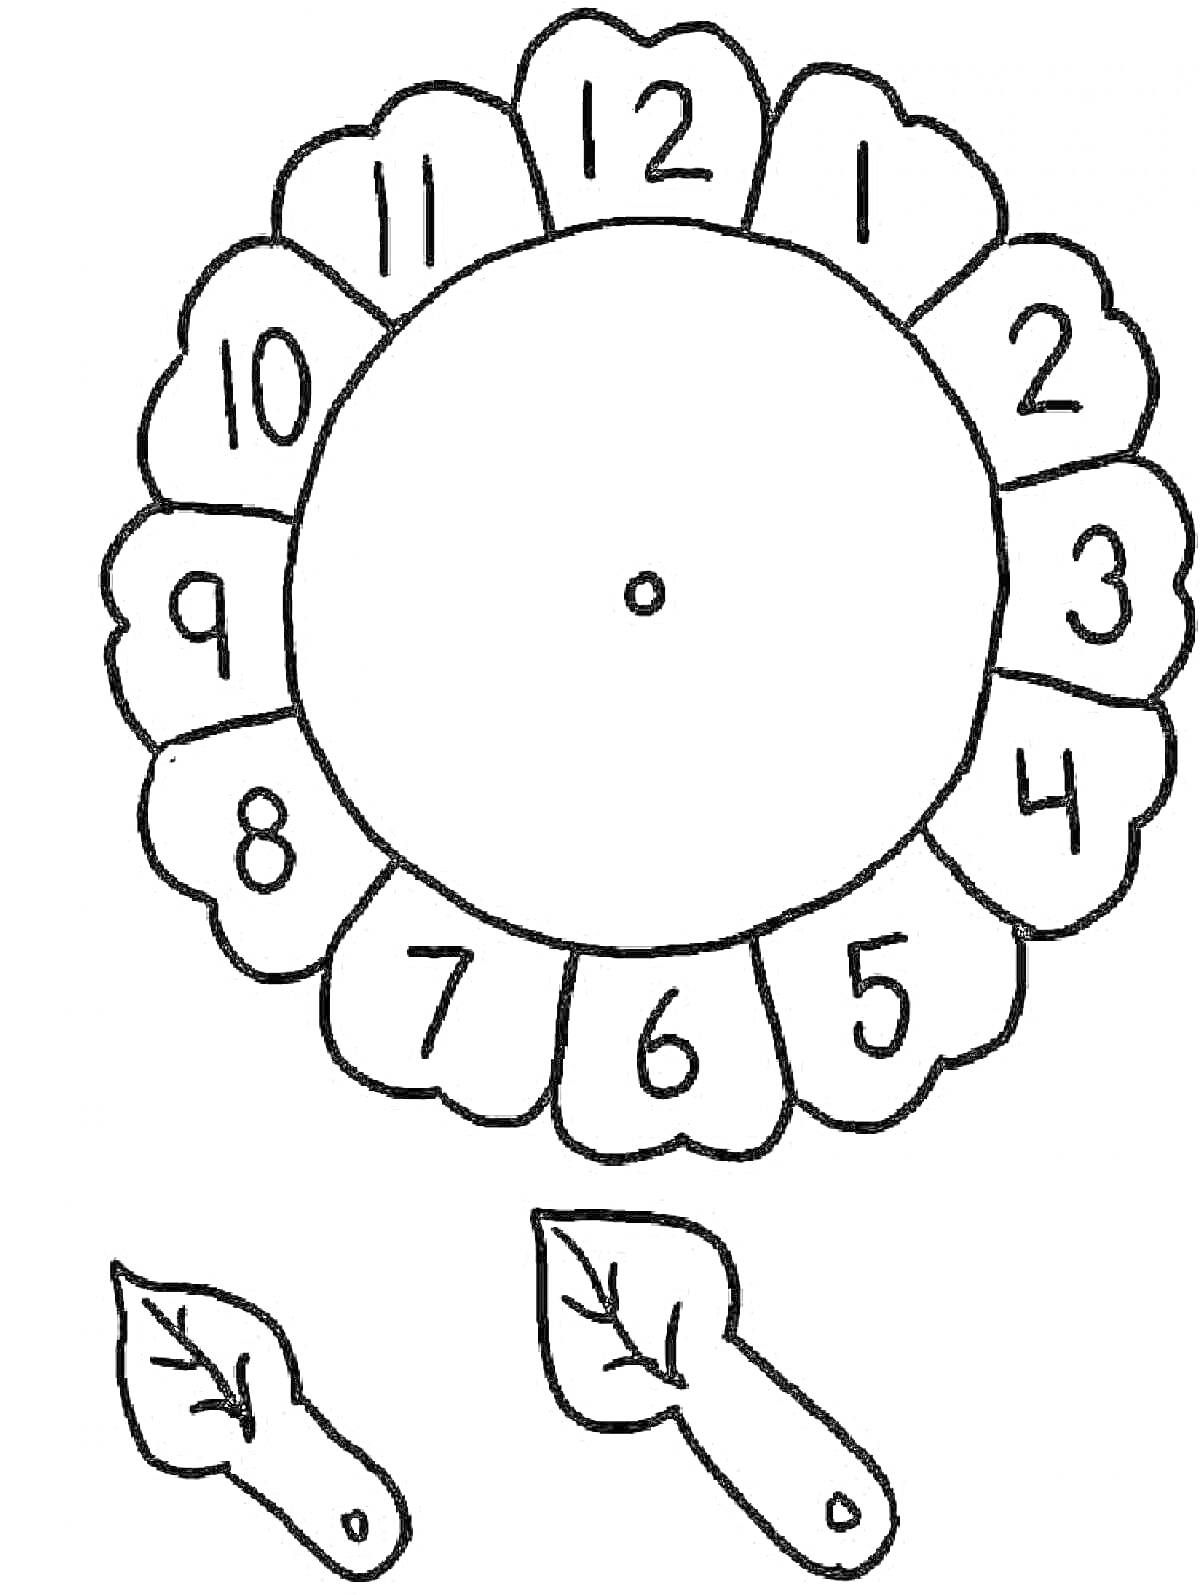 Часы в виде цветка с листьями-стрелками и цифрами от 1 до 12